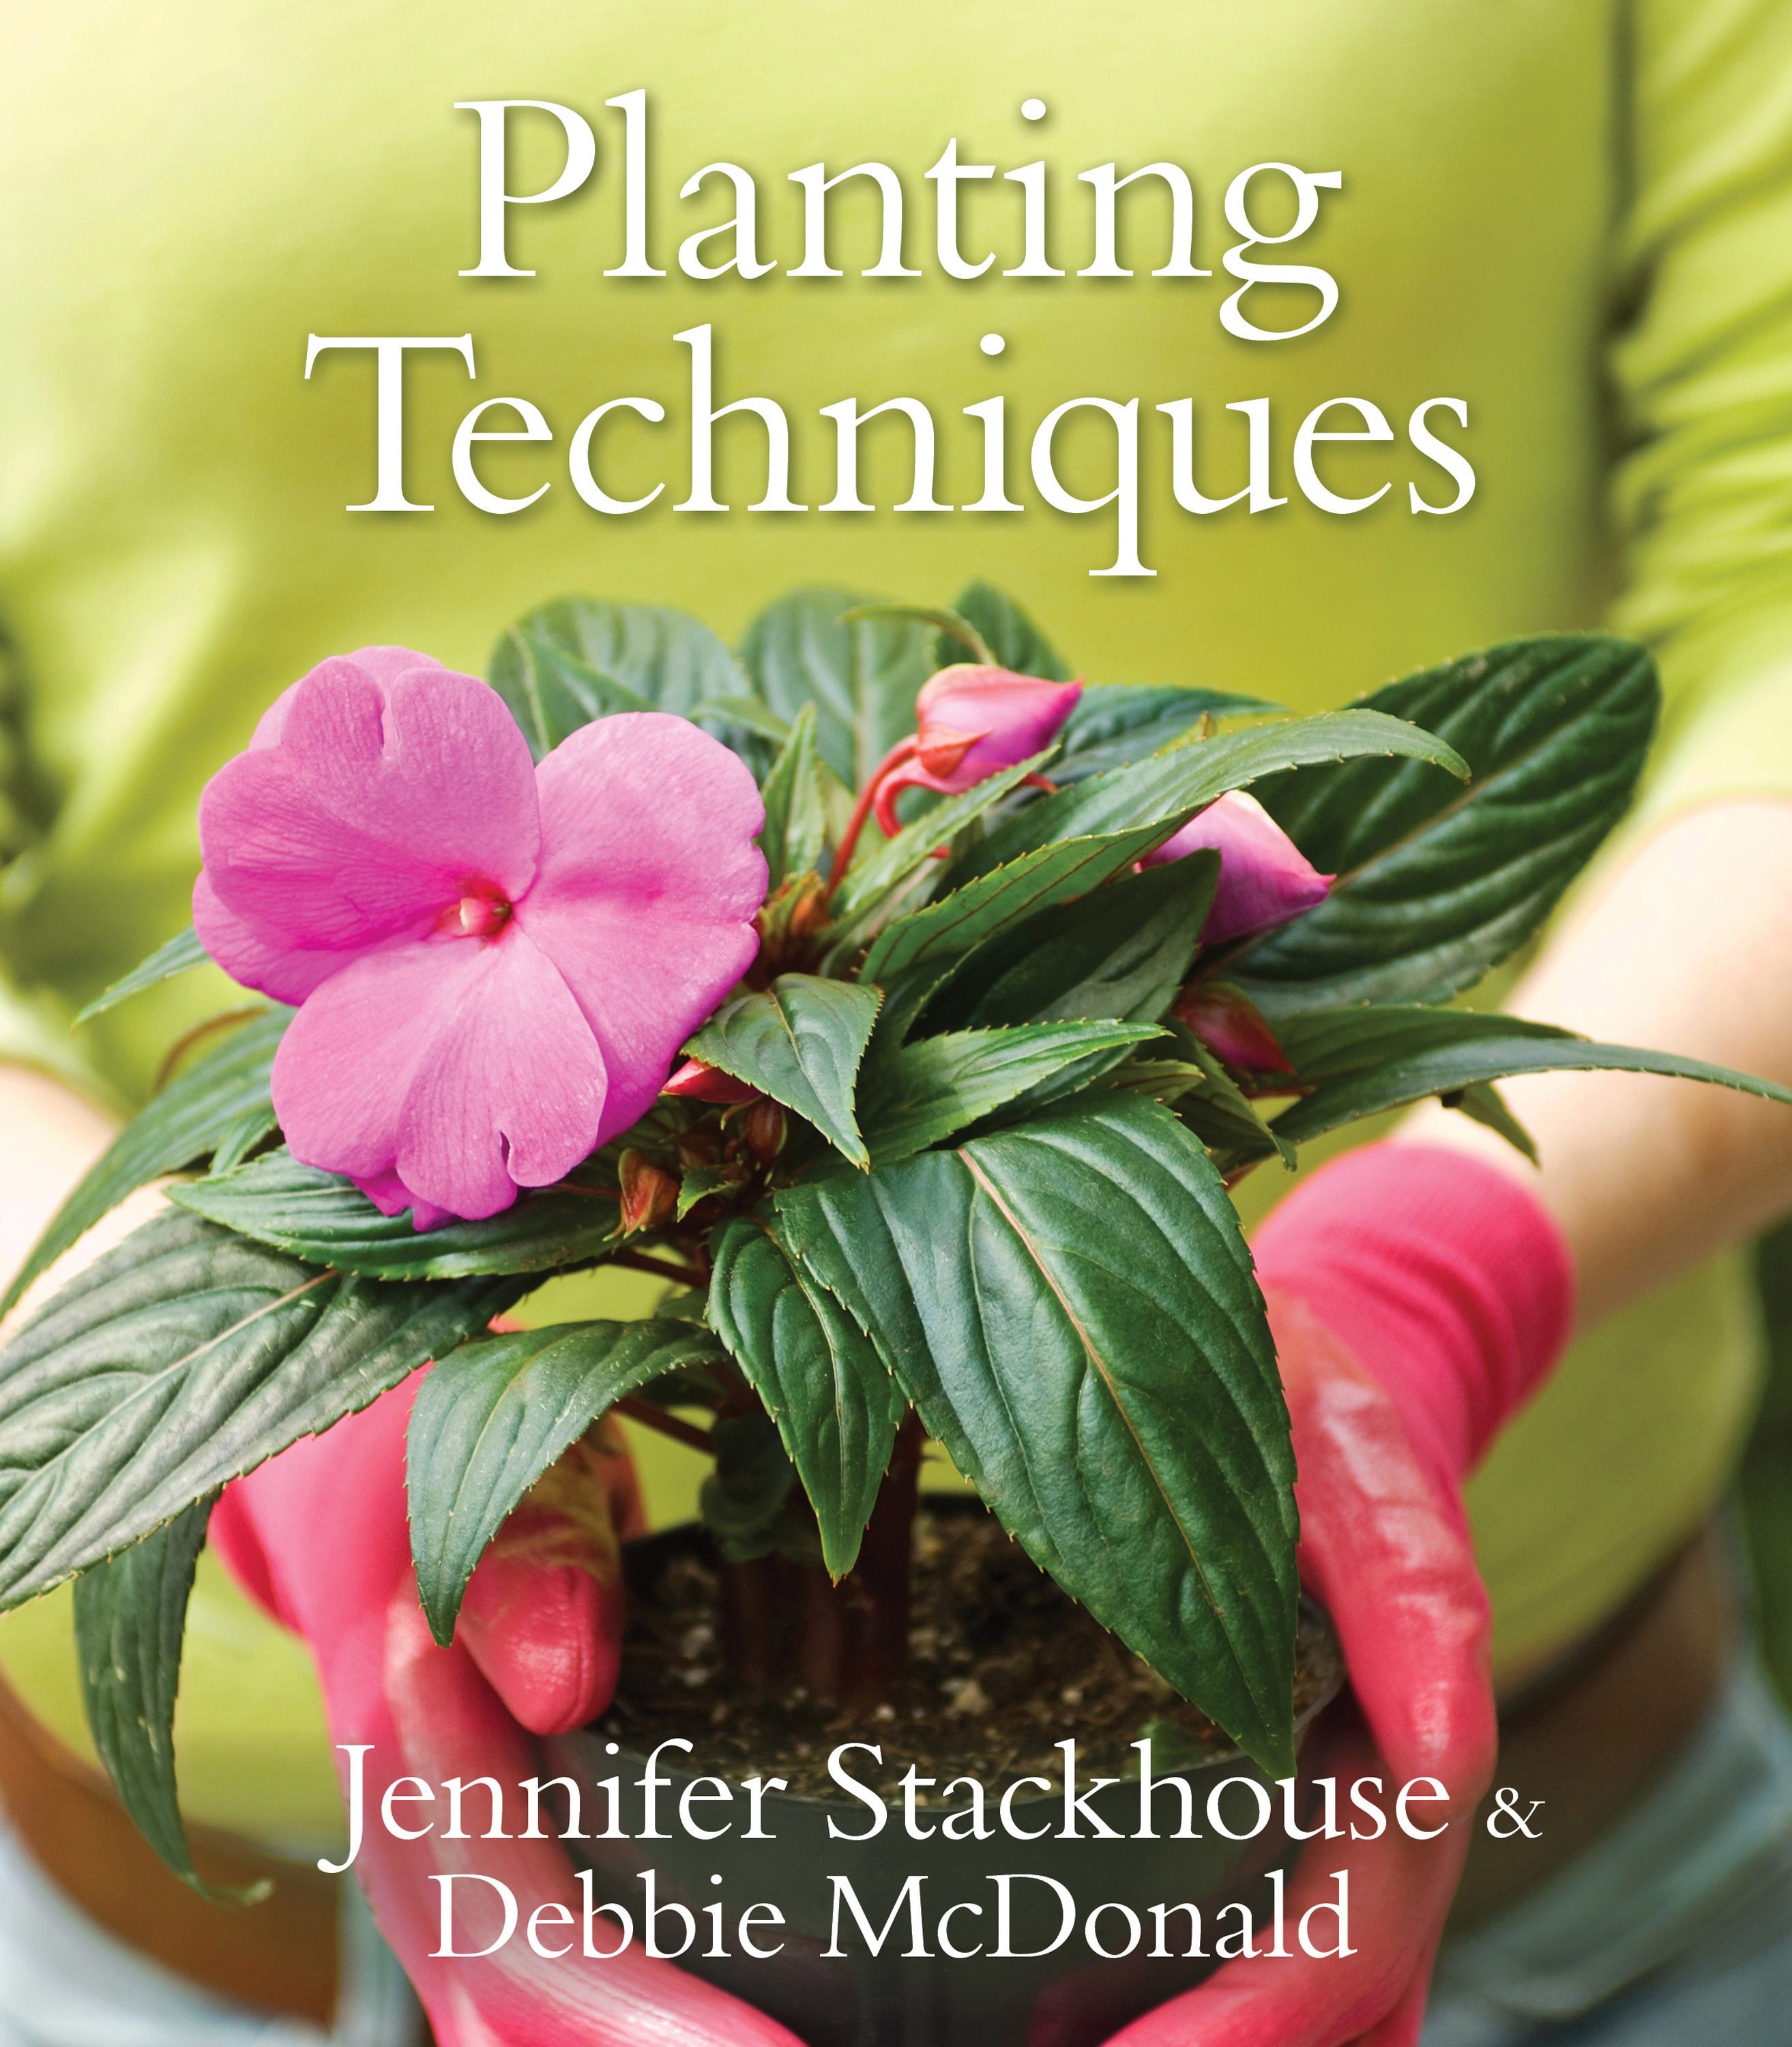 Planting Techniques - Jennifer Stackhouse and Debbie McDonald ...